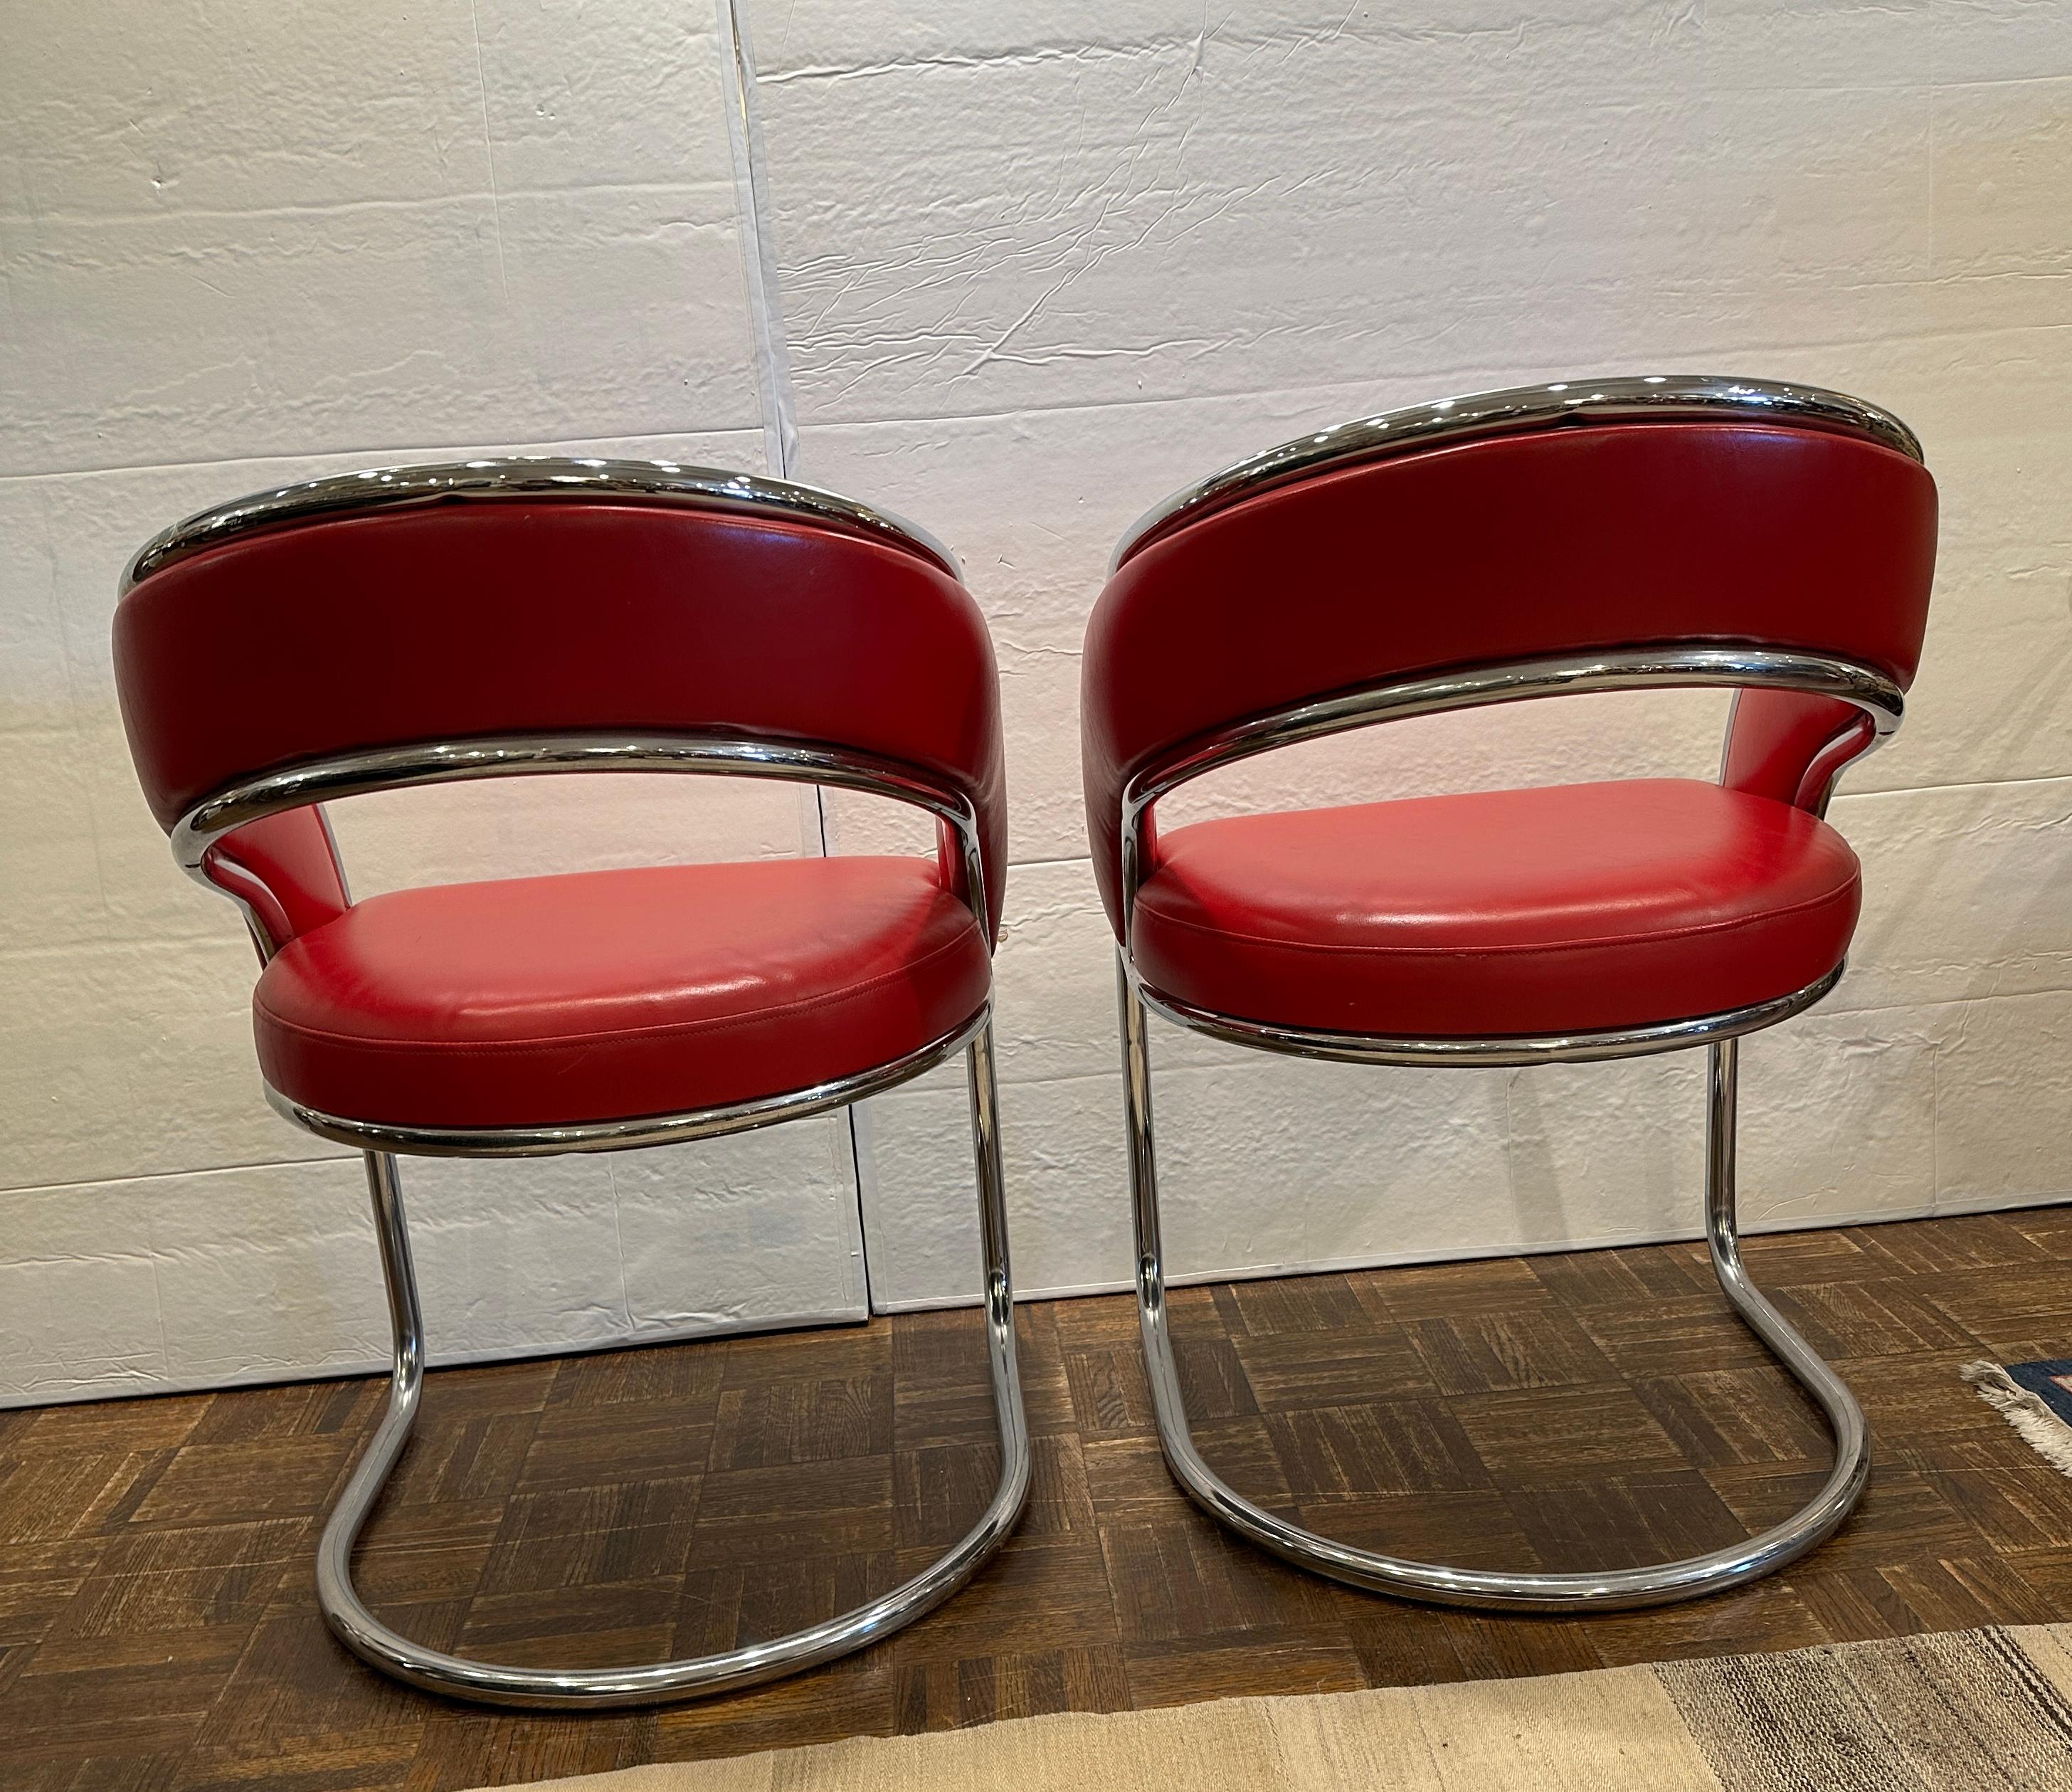 Helle und fröhliche Stühle aus rotem Leder und Chrom.  Can als Beistellstühle oder Spieltischstühle verwendet werden.  Es gibt ein weiteres Paar auf dieser Website, wenn Sie ein weiteres Paar benötigen.  In sehr gutem Zustand.